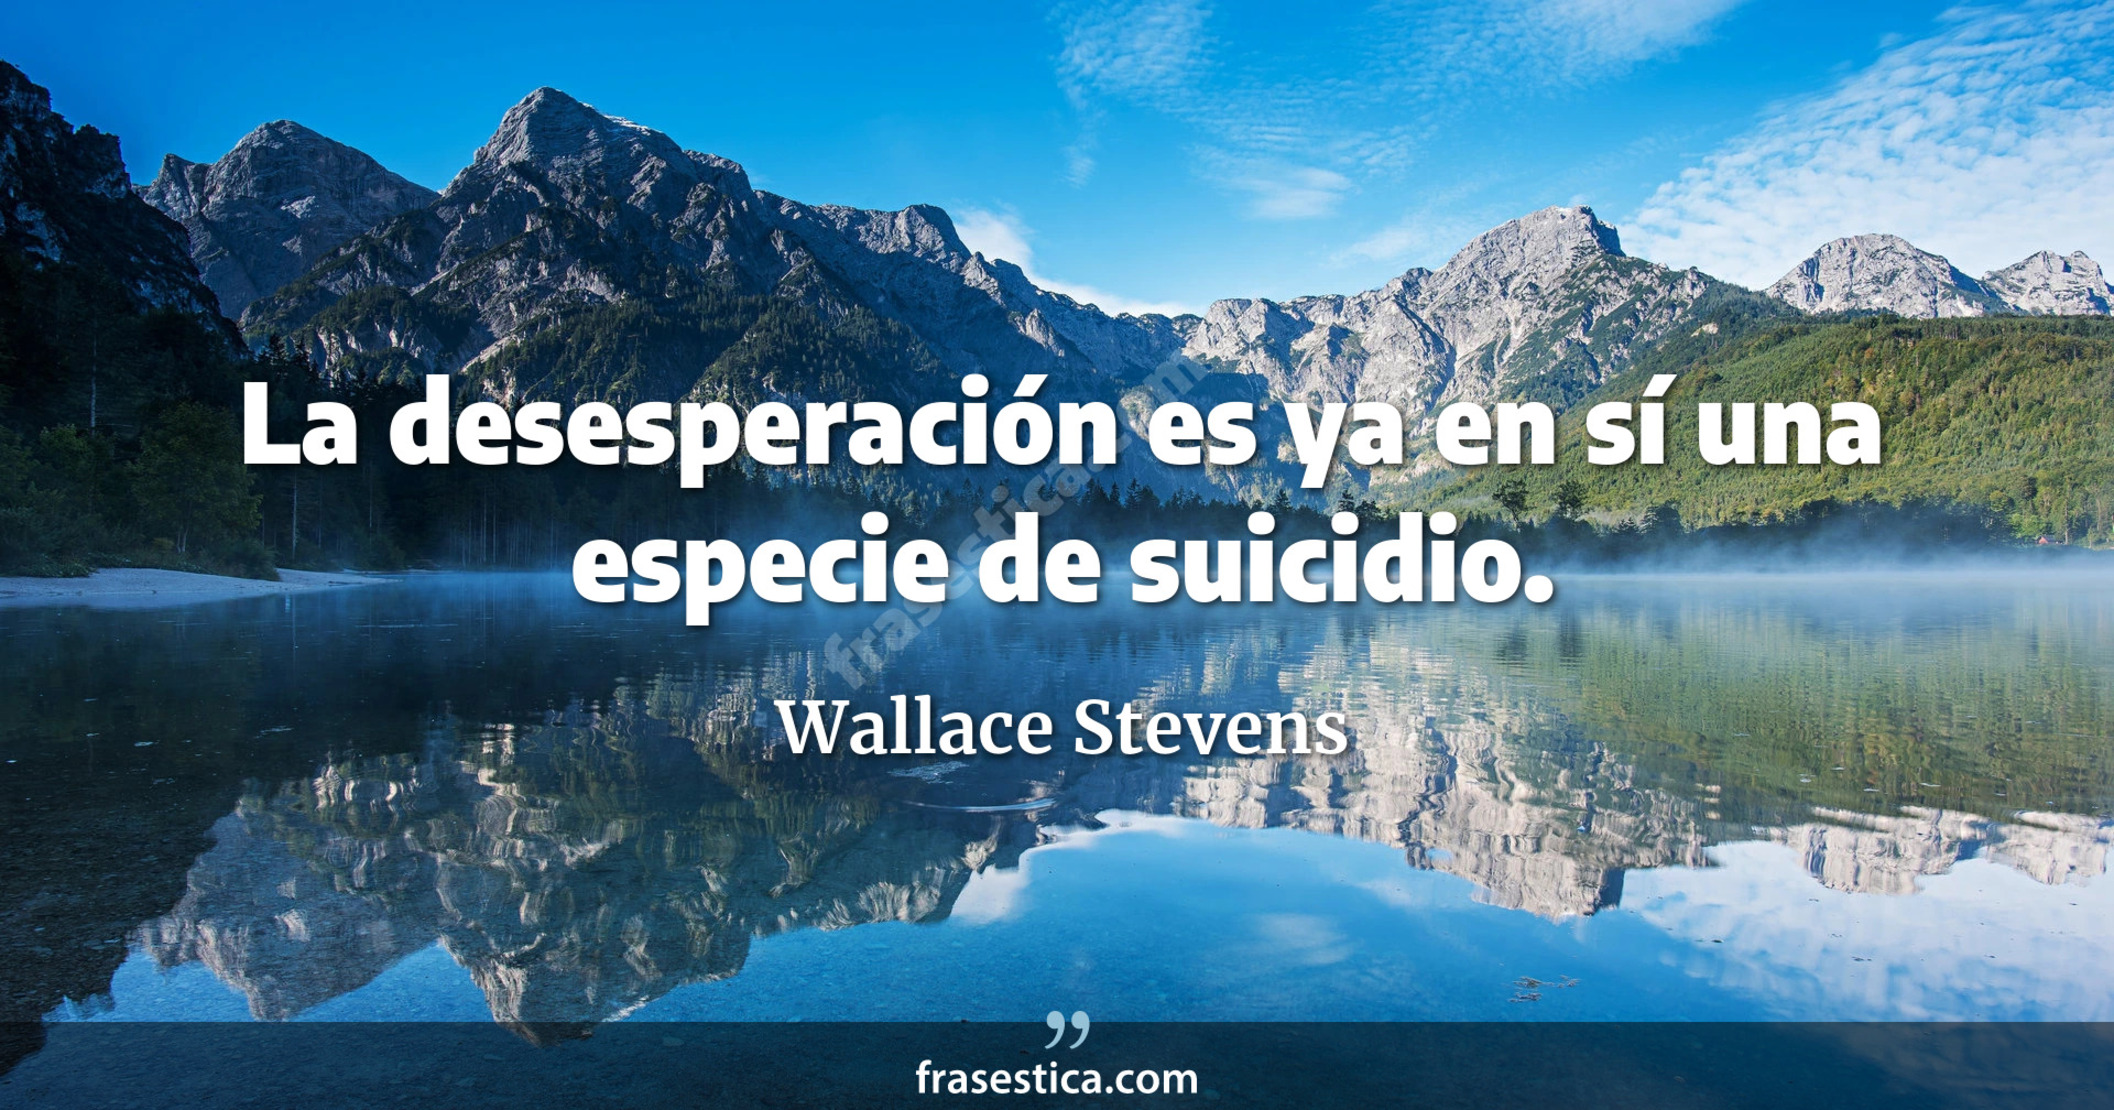 La desesperación es ya en sí una especie de suicidio. - Wallace Stevens